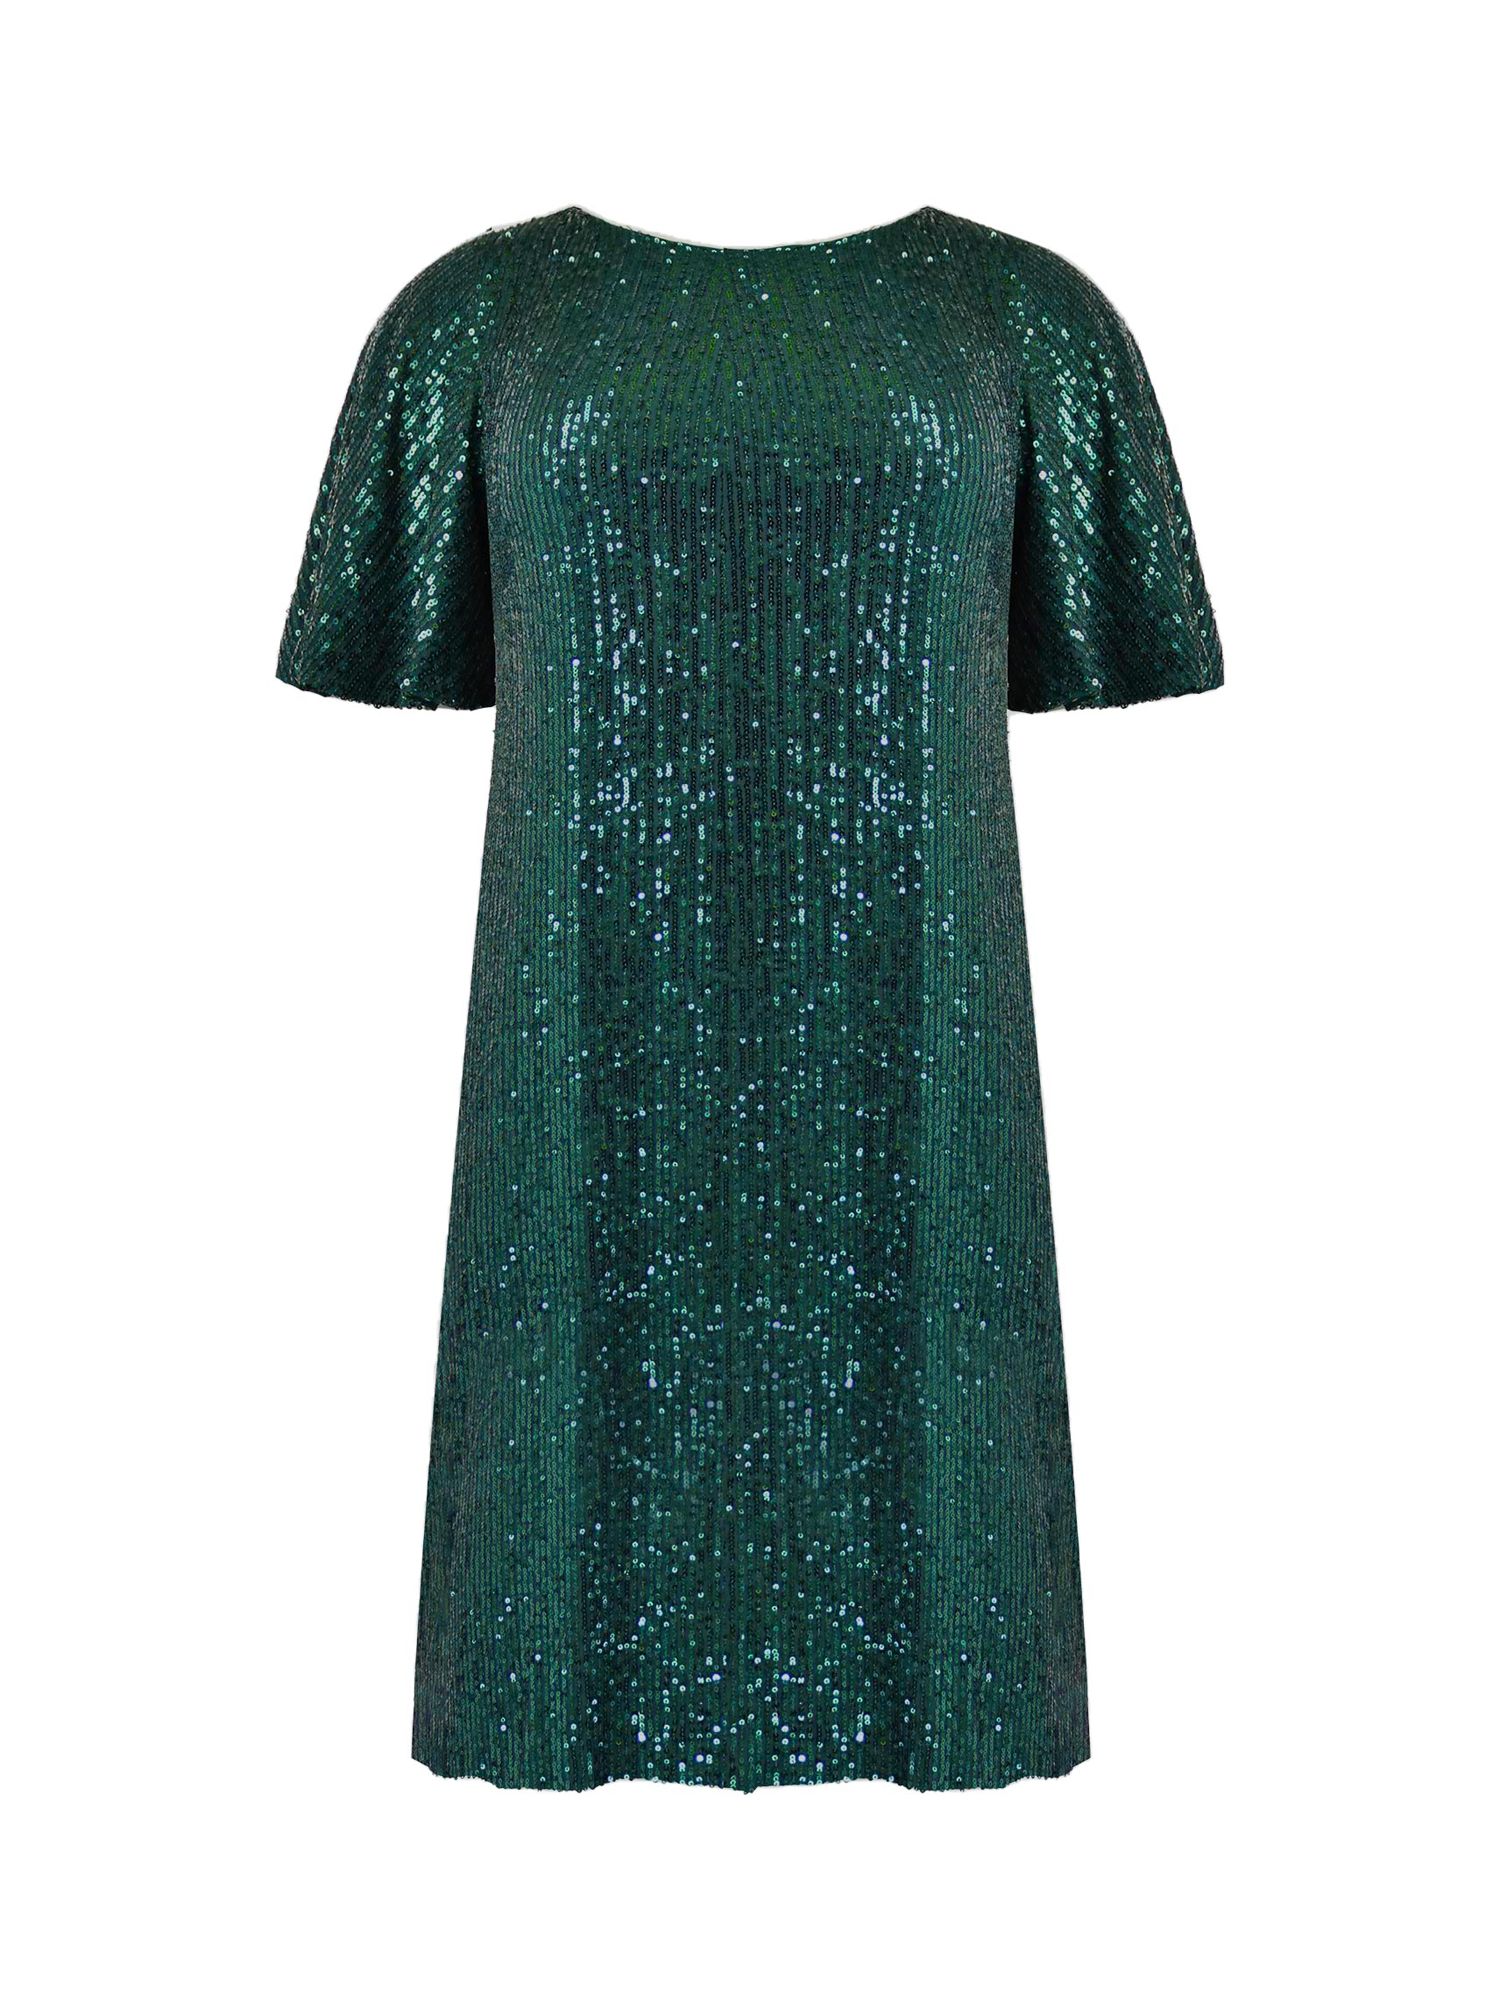 Buy Live Unlimited Curve Sequin Flutter Sleeve Dress, Green Online at johnlewis.com